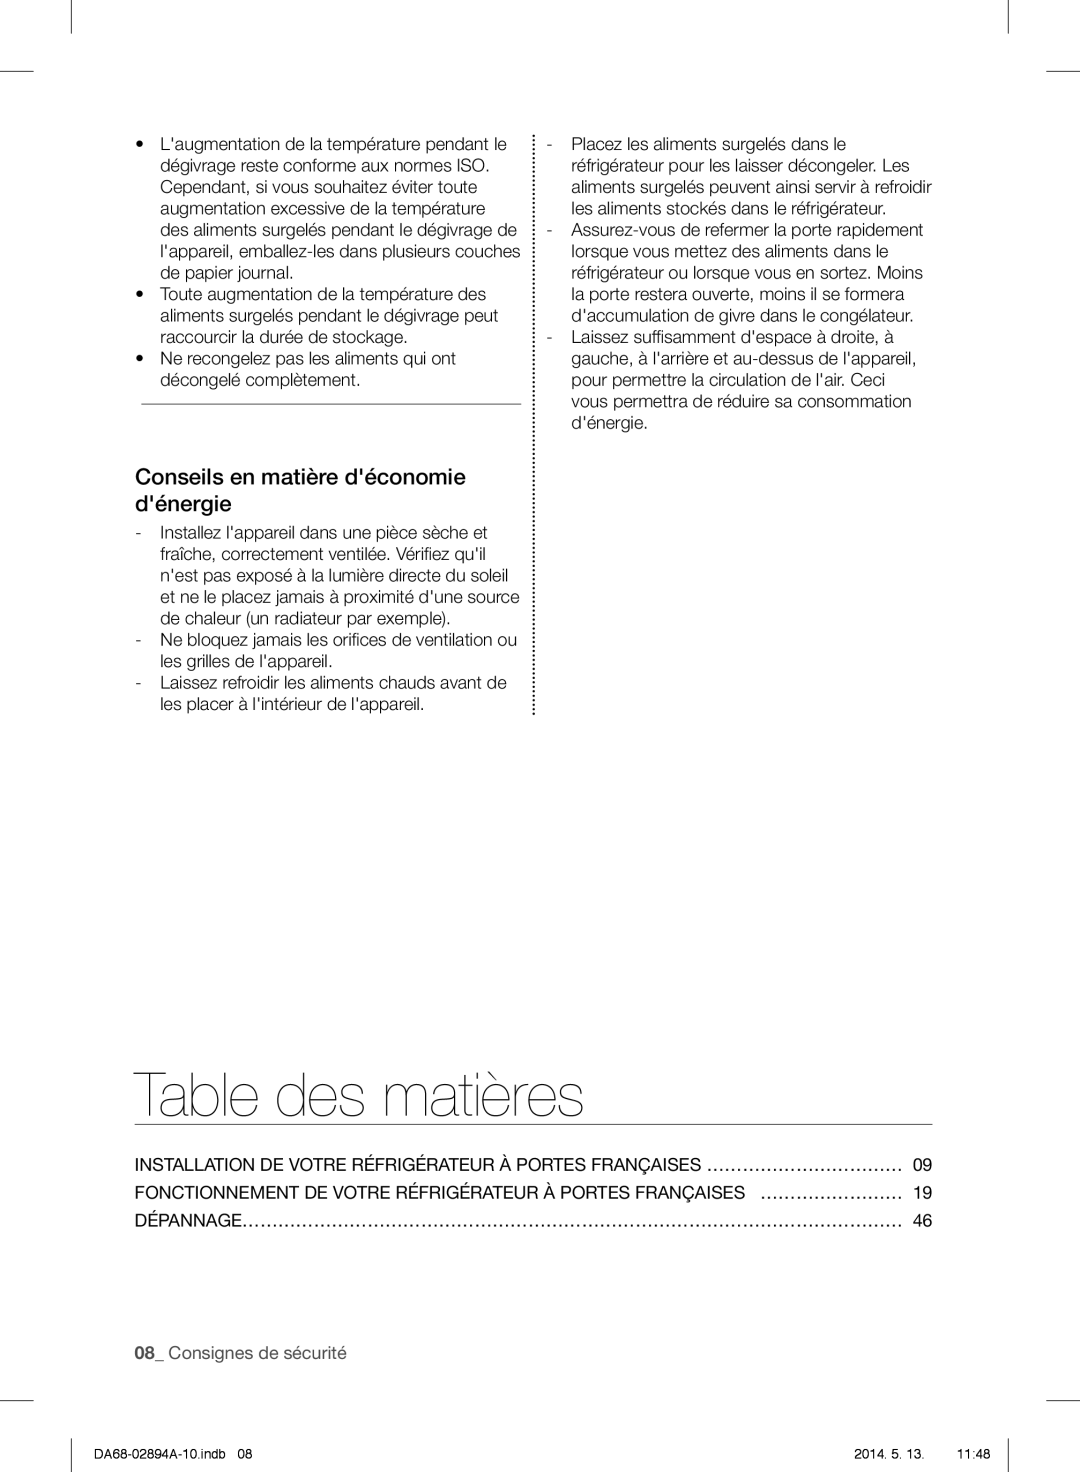 Samsung RF31FMESBSR user manual Table des matières, Conseils en matière déconomie dénergie, 08_ Consignes de sécurité 